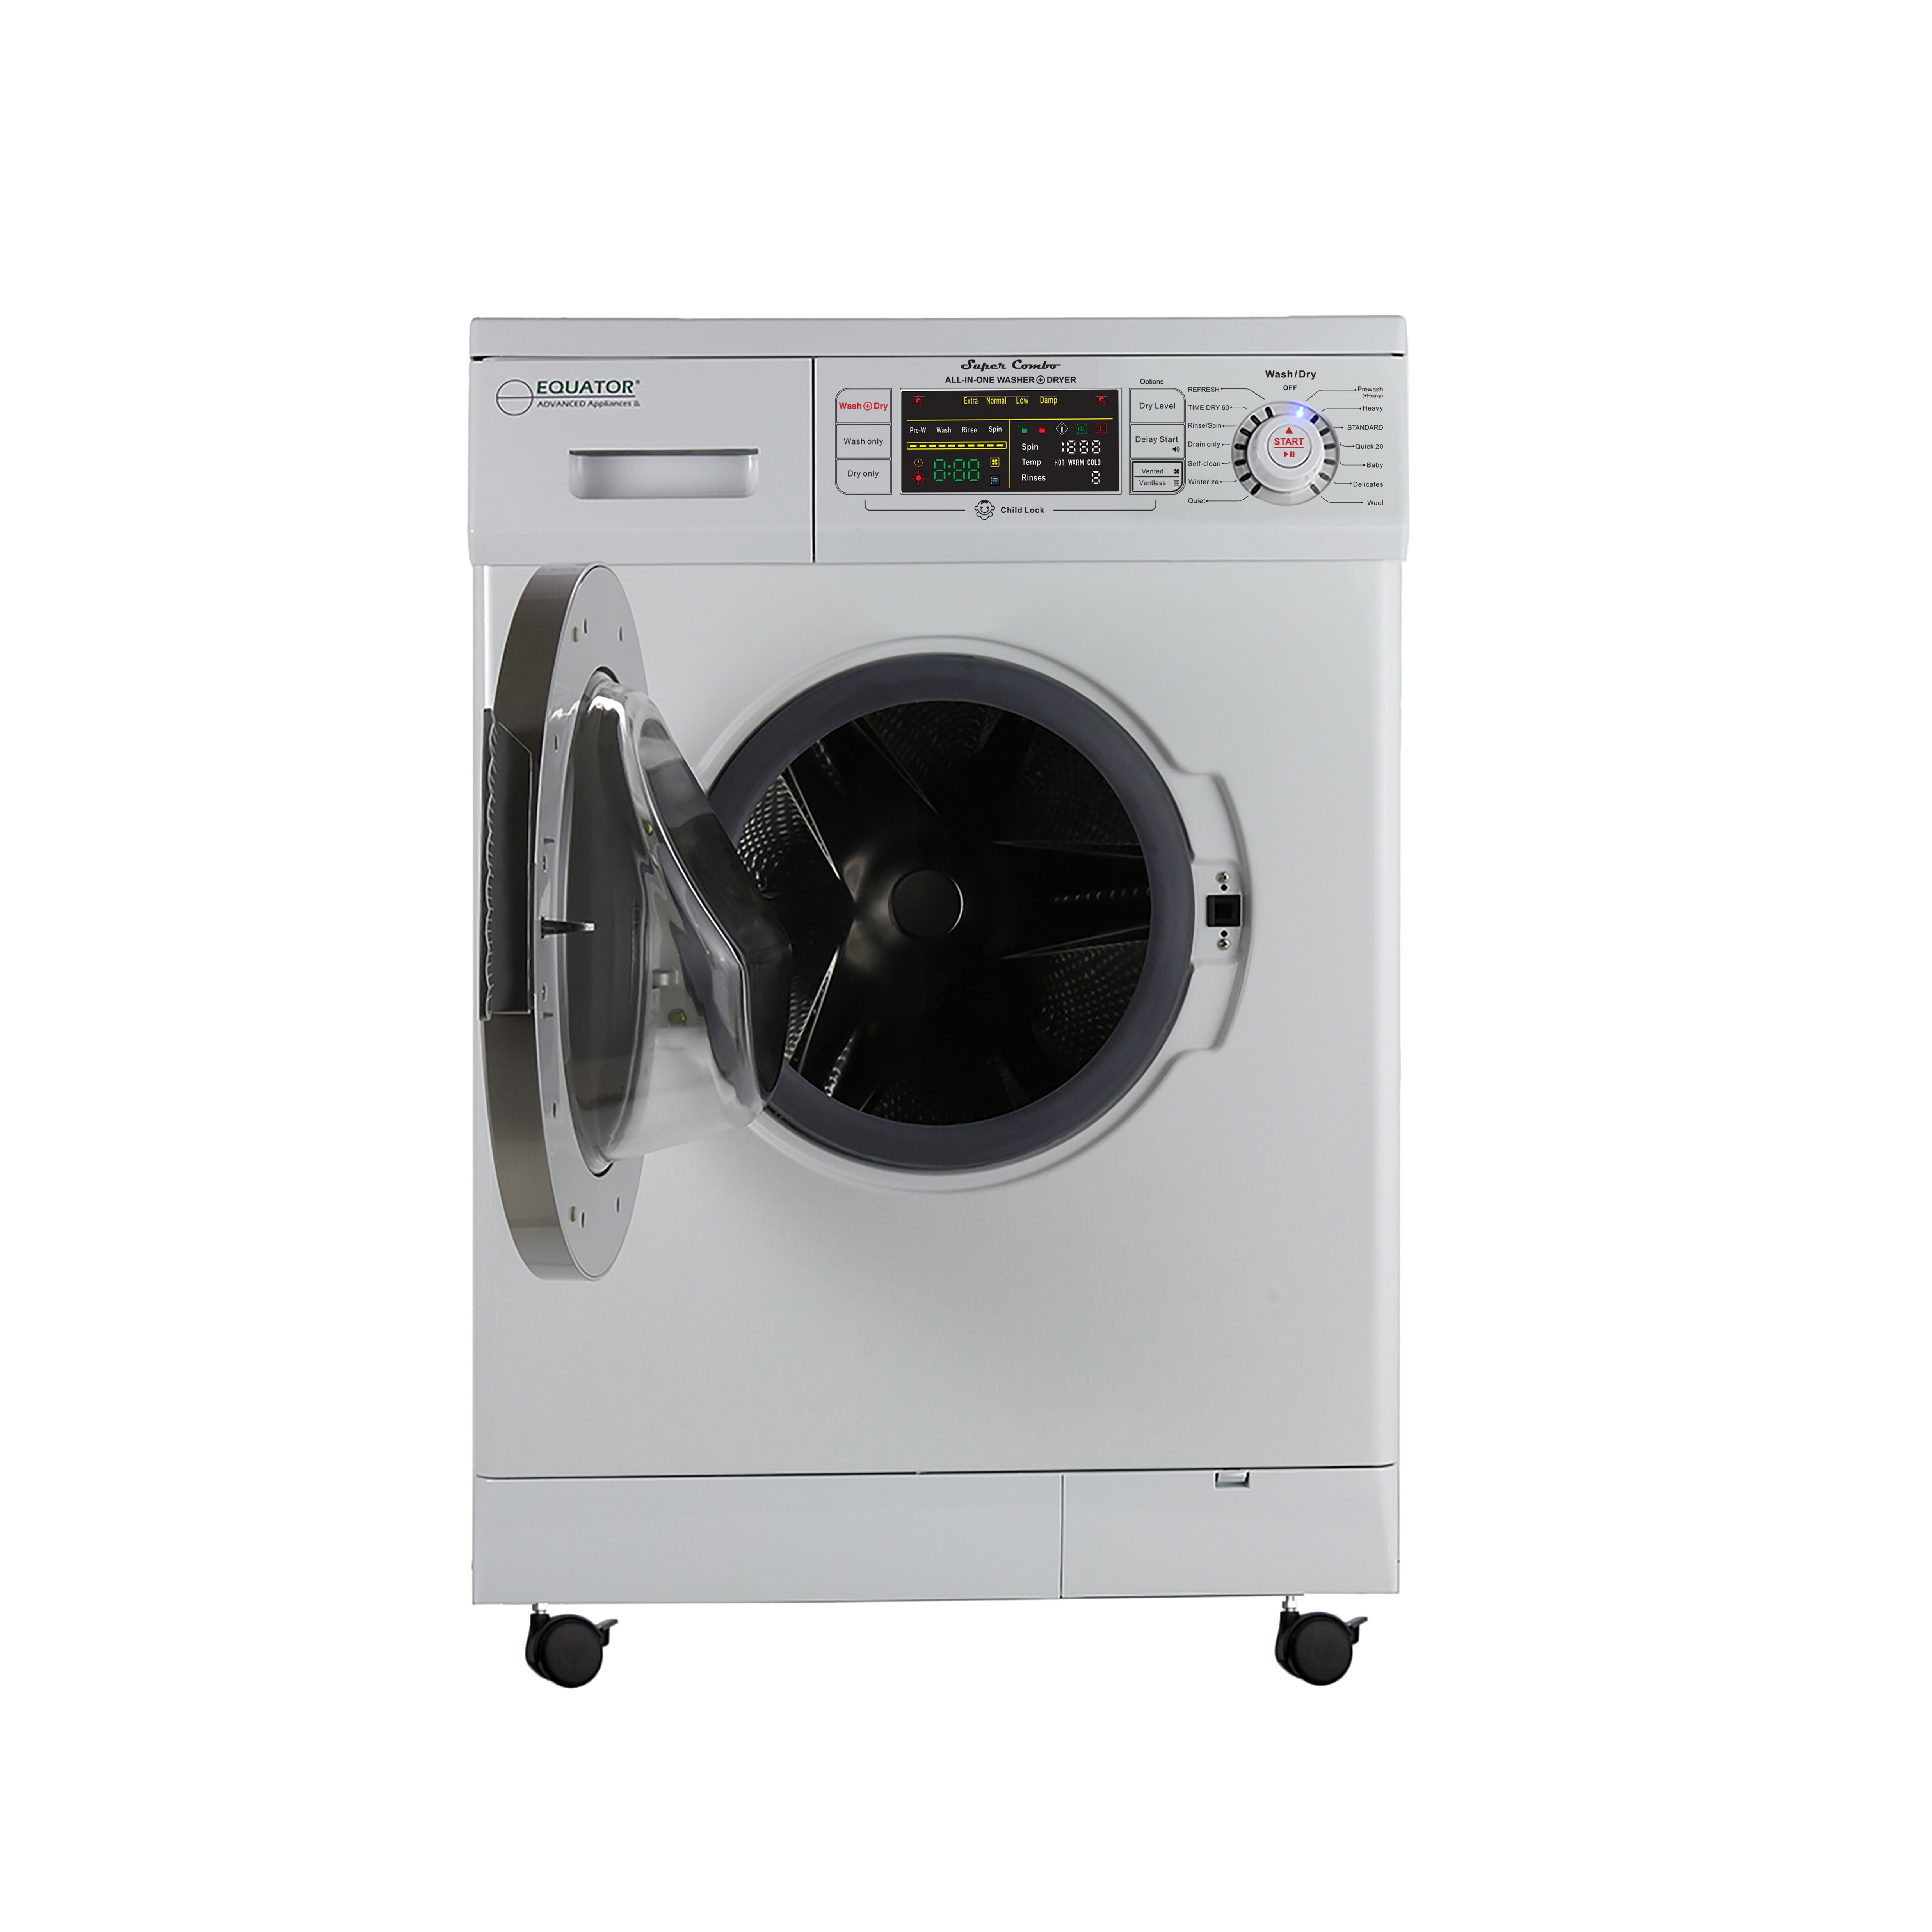 110 Volt Washer Dryer